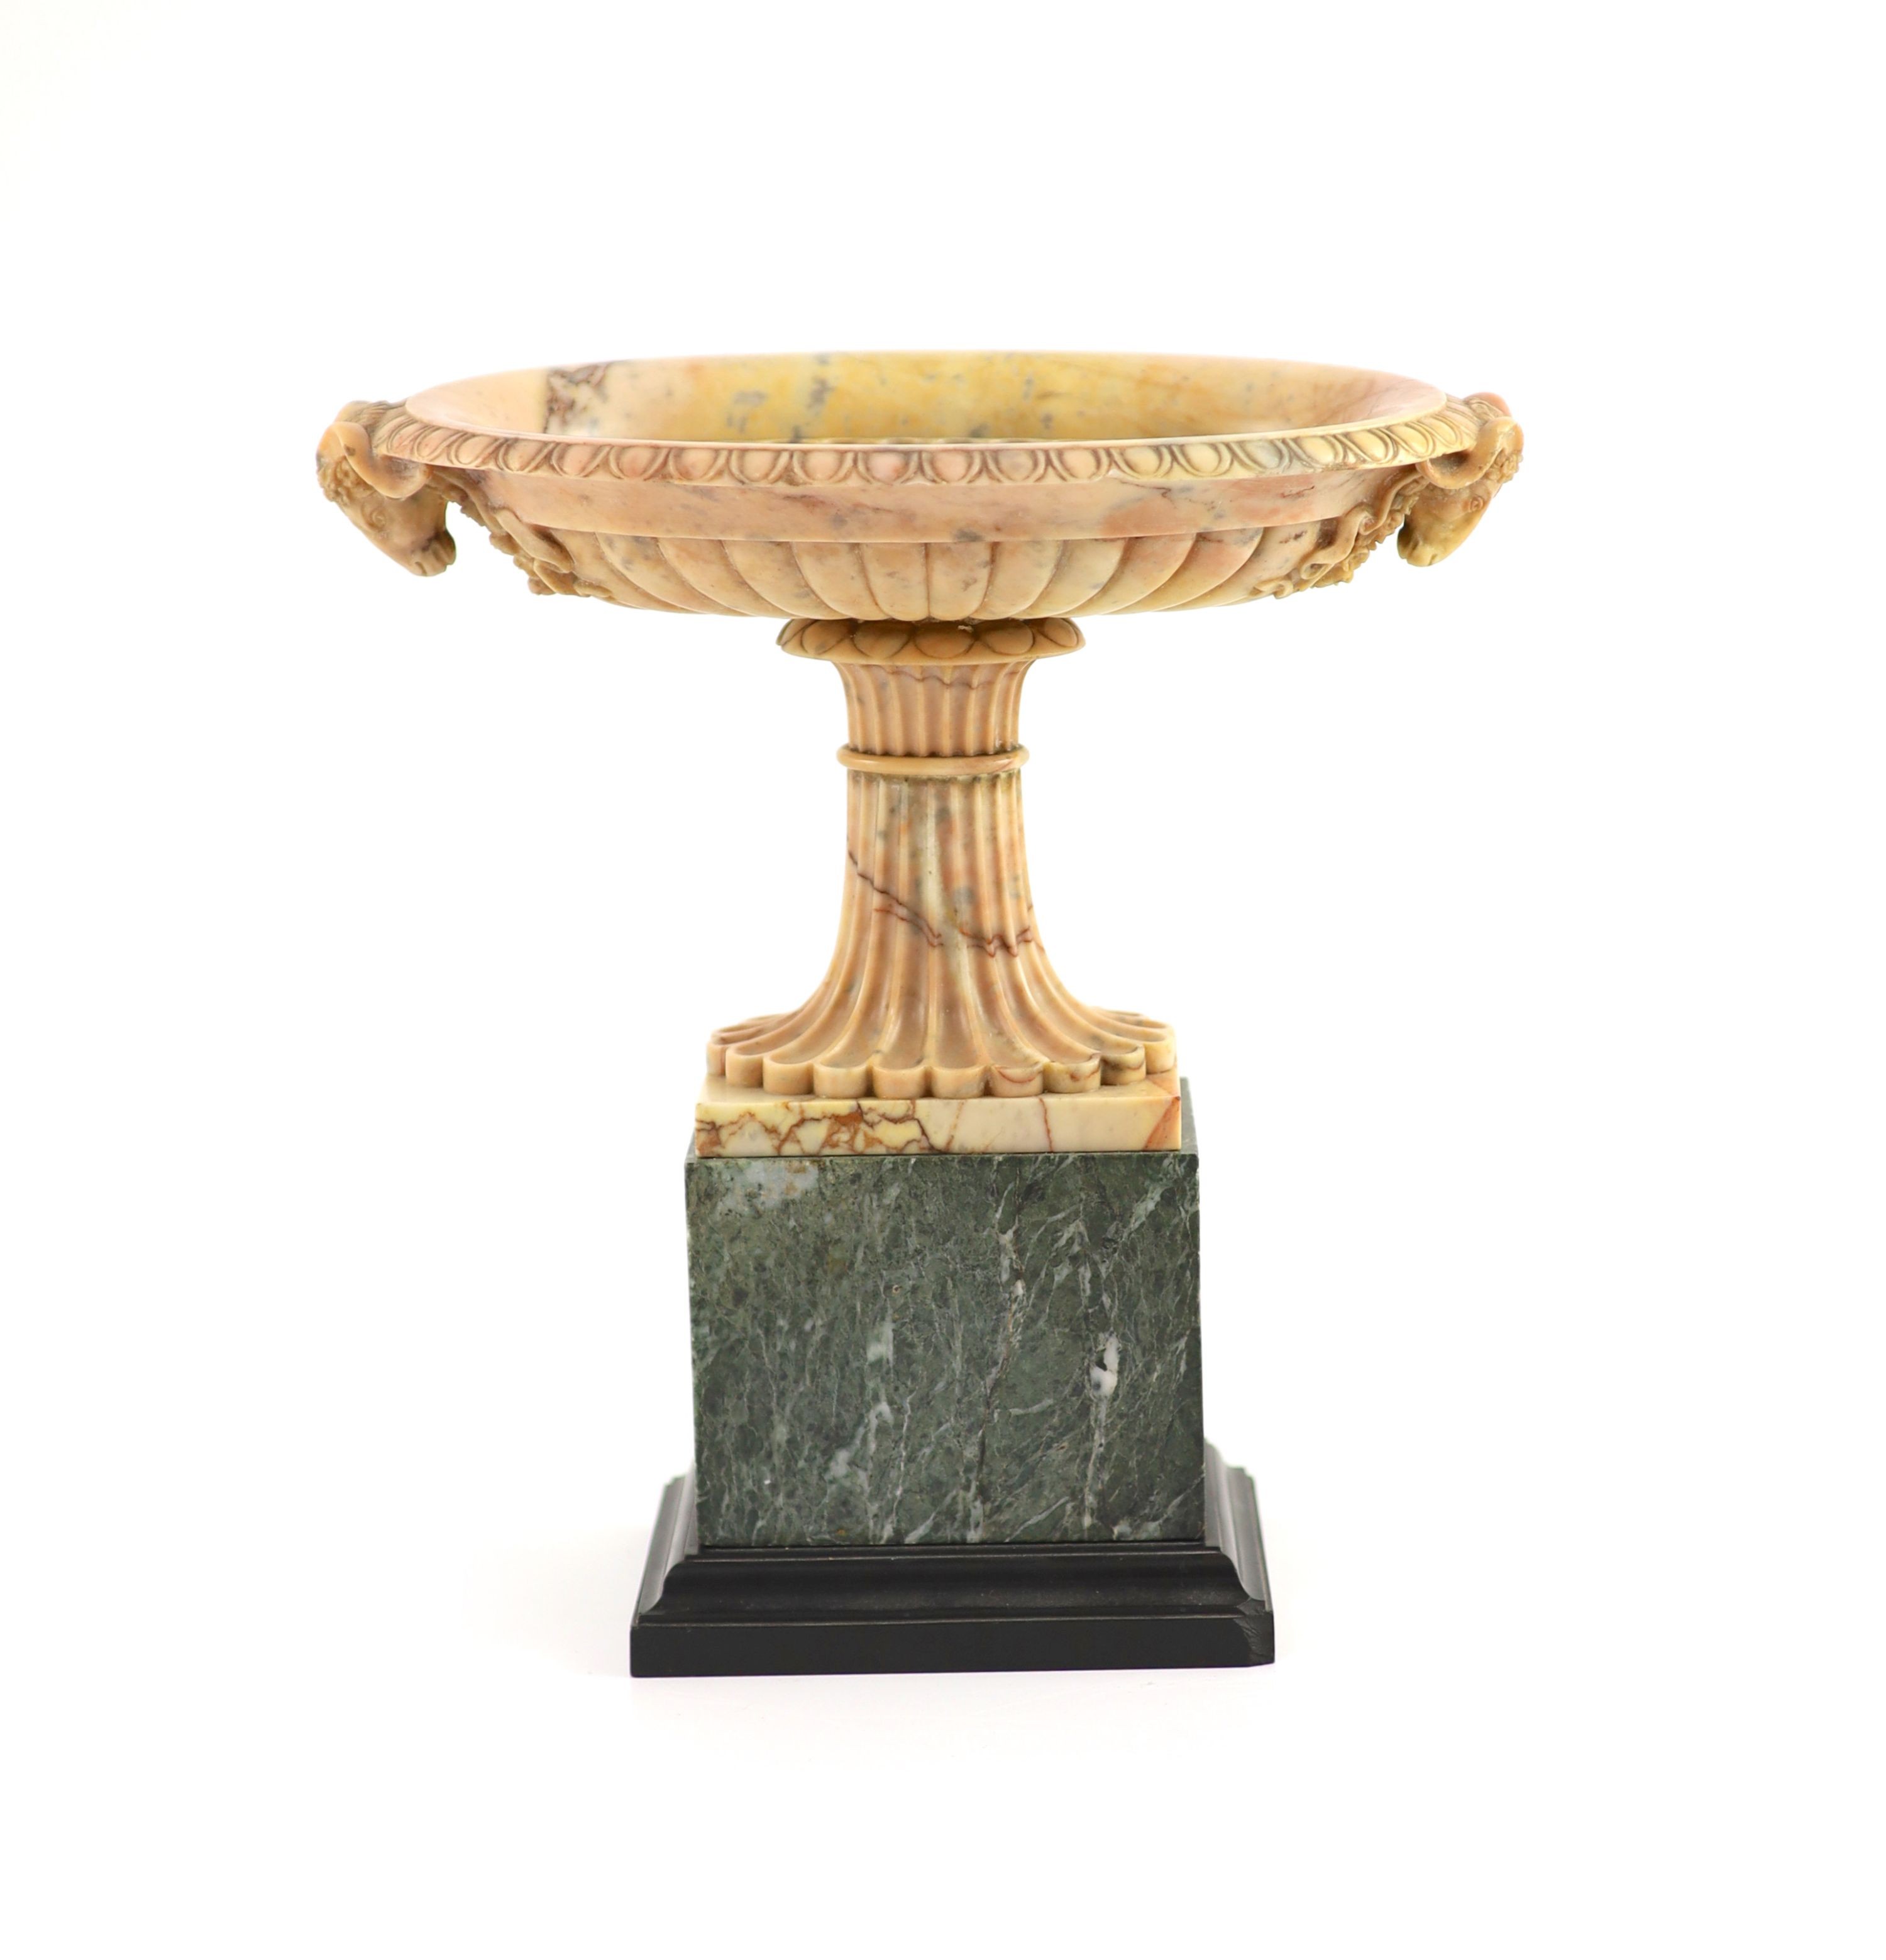 An early 19th century Grand Tour souvenir sienna marble urn H 27.5cm. W 26.5cm. D 17cm.